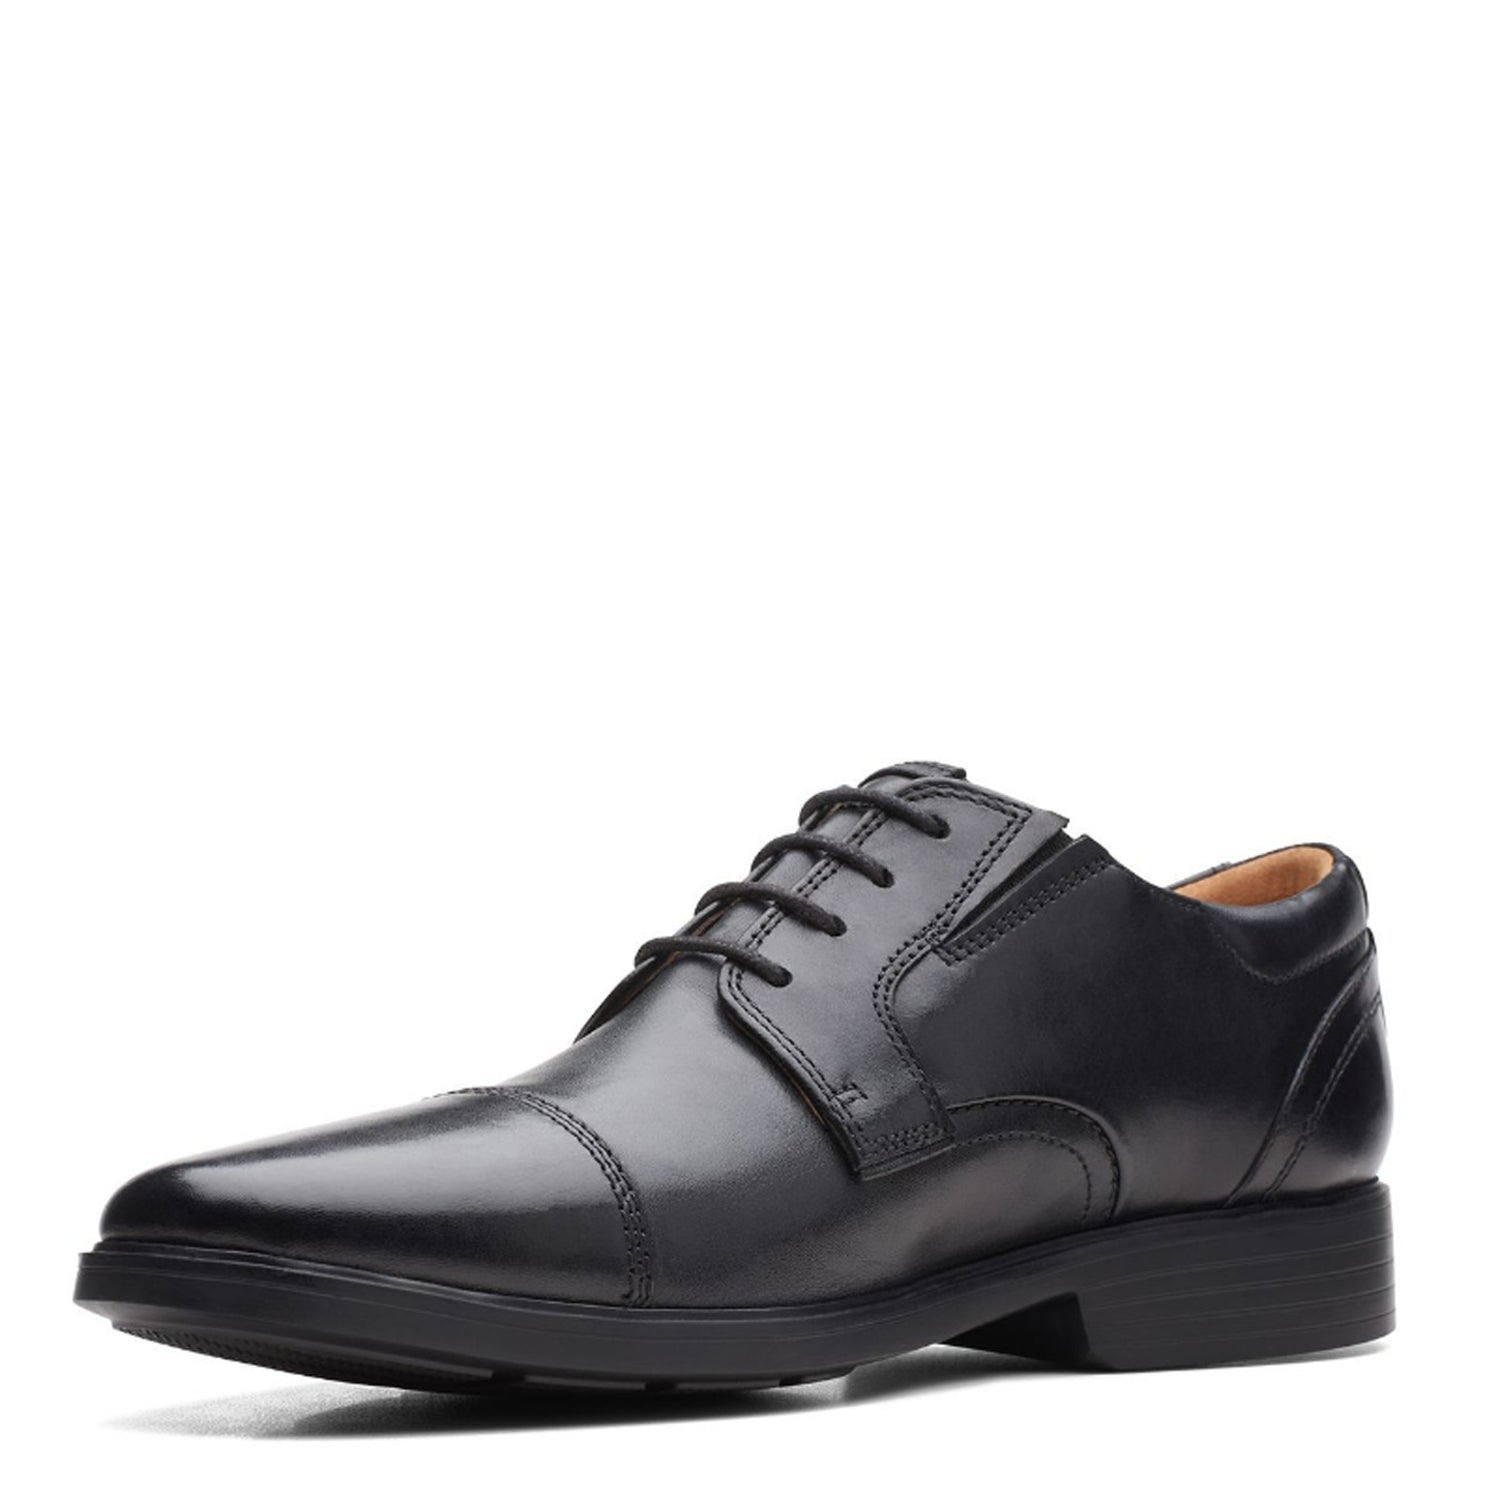 Peltz Shoes  Men's Clarks Clarkslite Cap Toe Oxford BLACK 26168244